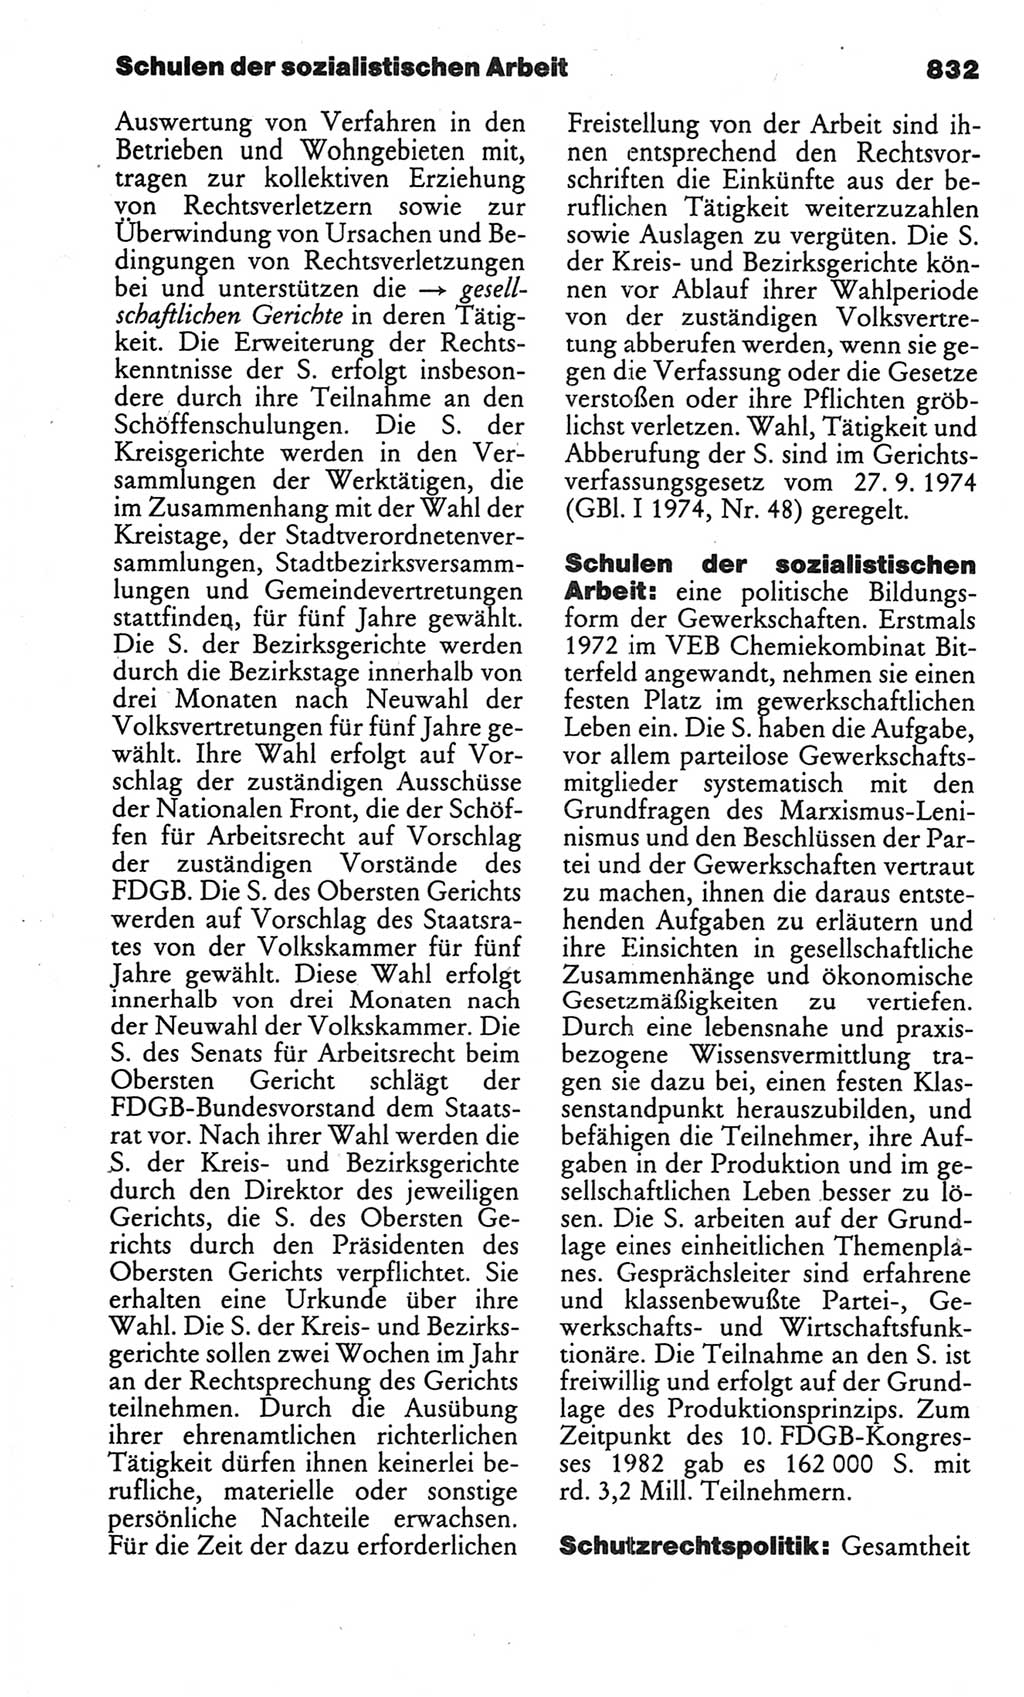 Kleines politisches Wörterbuch [Deutsche Demokratische Republik (DDR)] 1986, Seite 832 (Kl. pol. Wb. DDR 1986, S. 832)